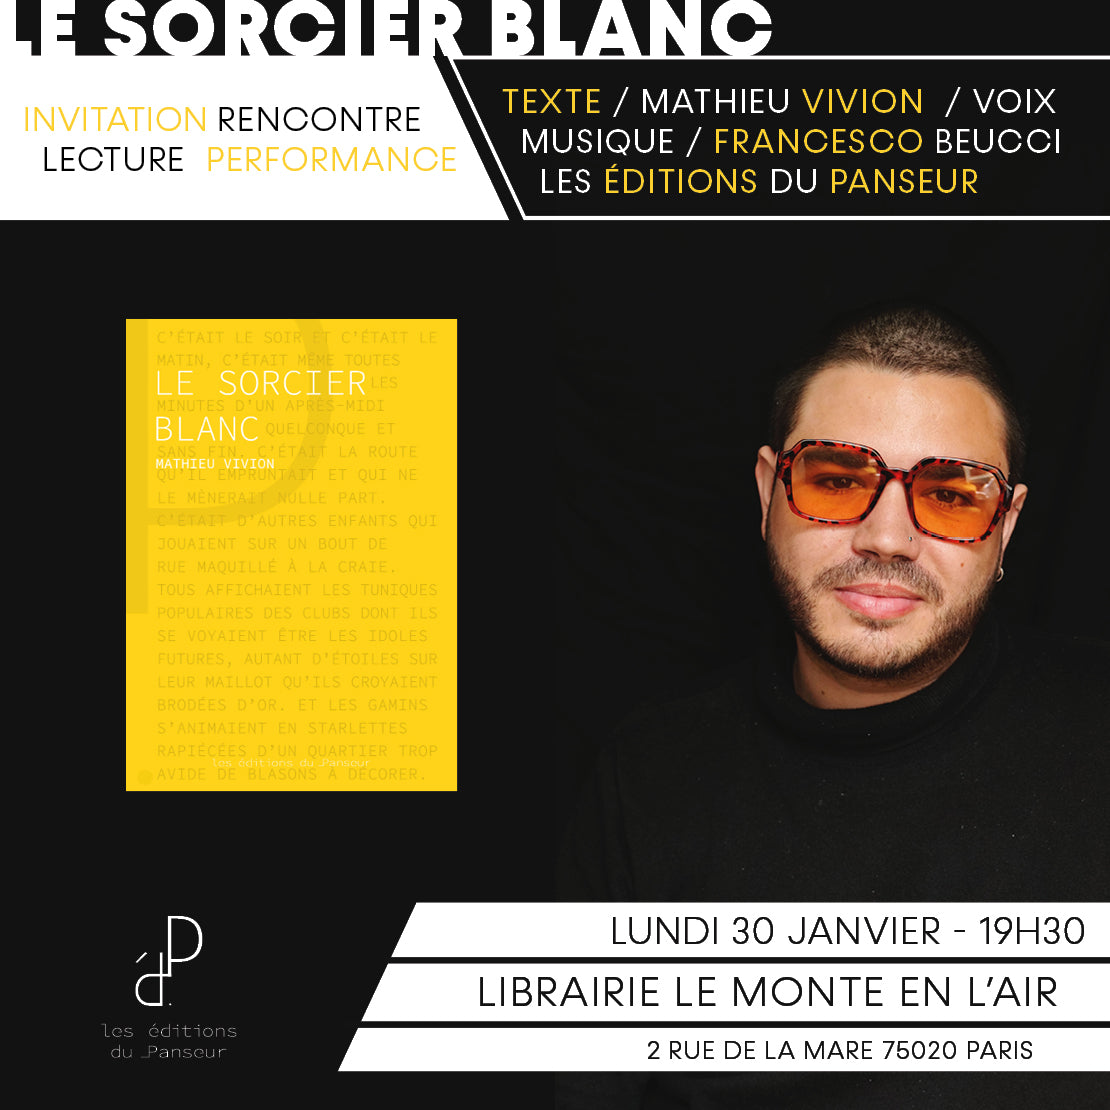 // Invitation soirée littéraire / Lundi 30 janvier à la librairie Le monte en l'air - Paris //